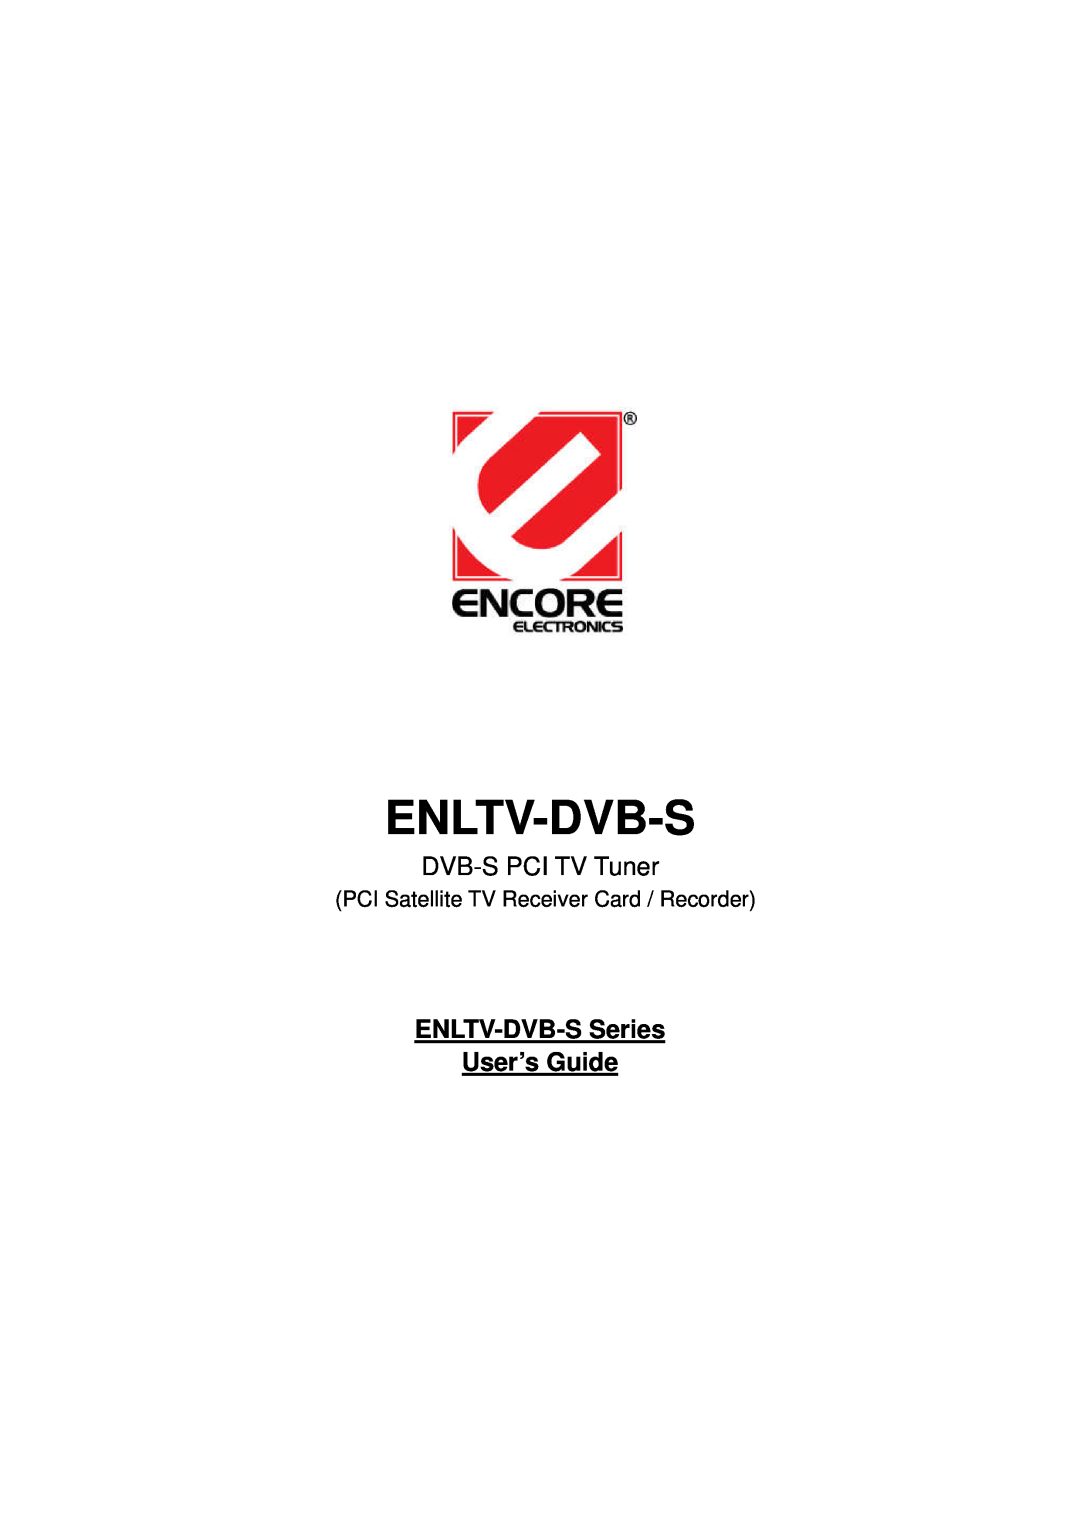 Encore electronic manual DVB-S PCI TV Tuner, Enltv-Dvb-S, ENLTV-DVB-S Series User’s Guide 